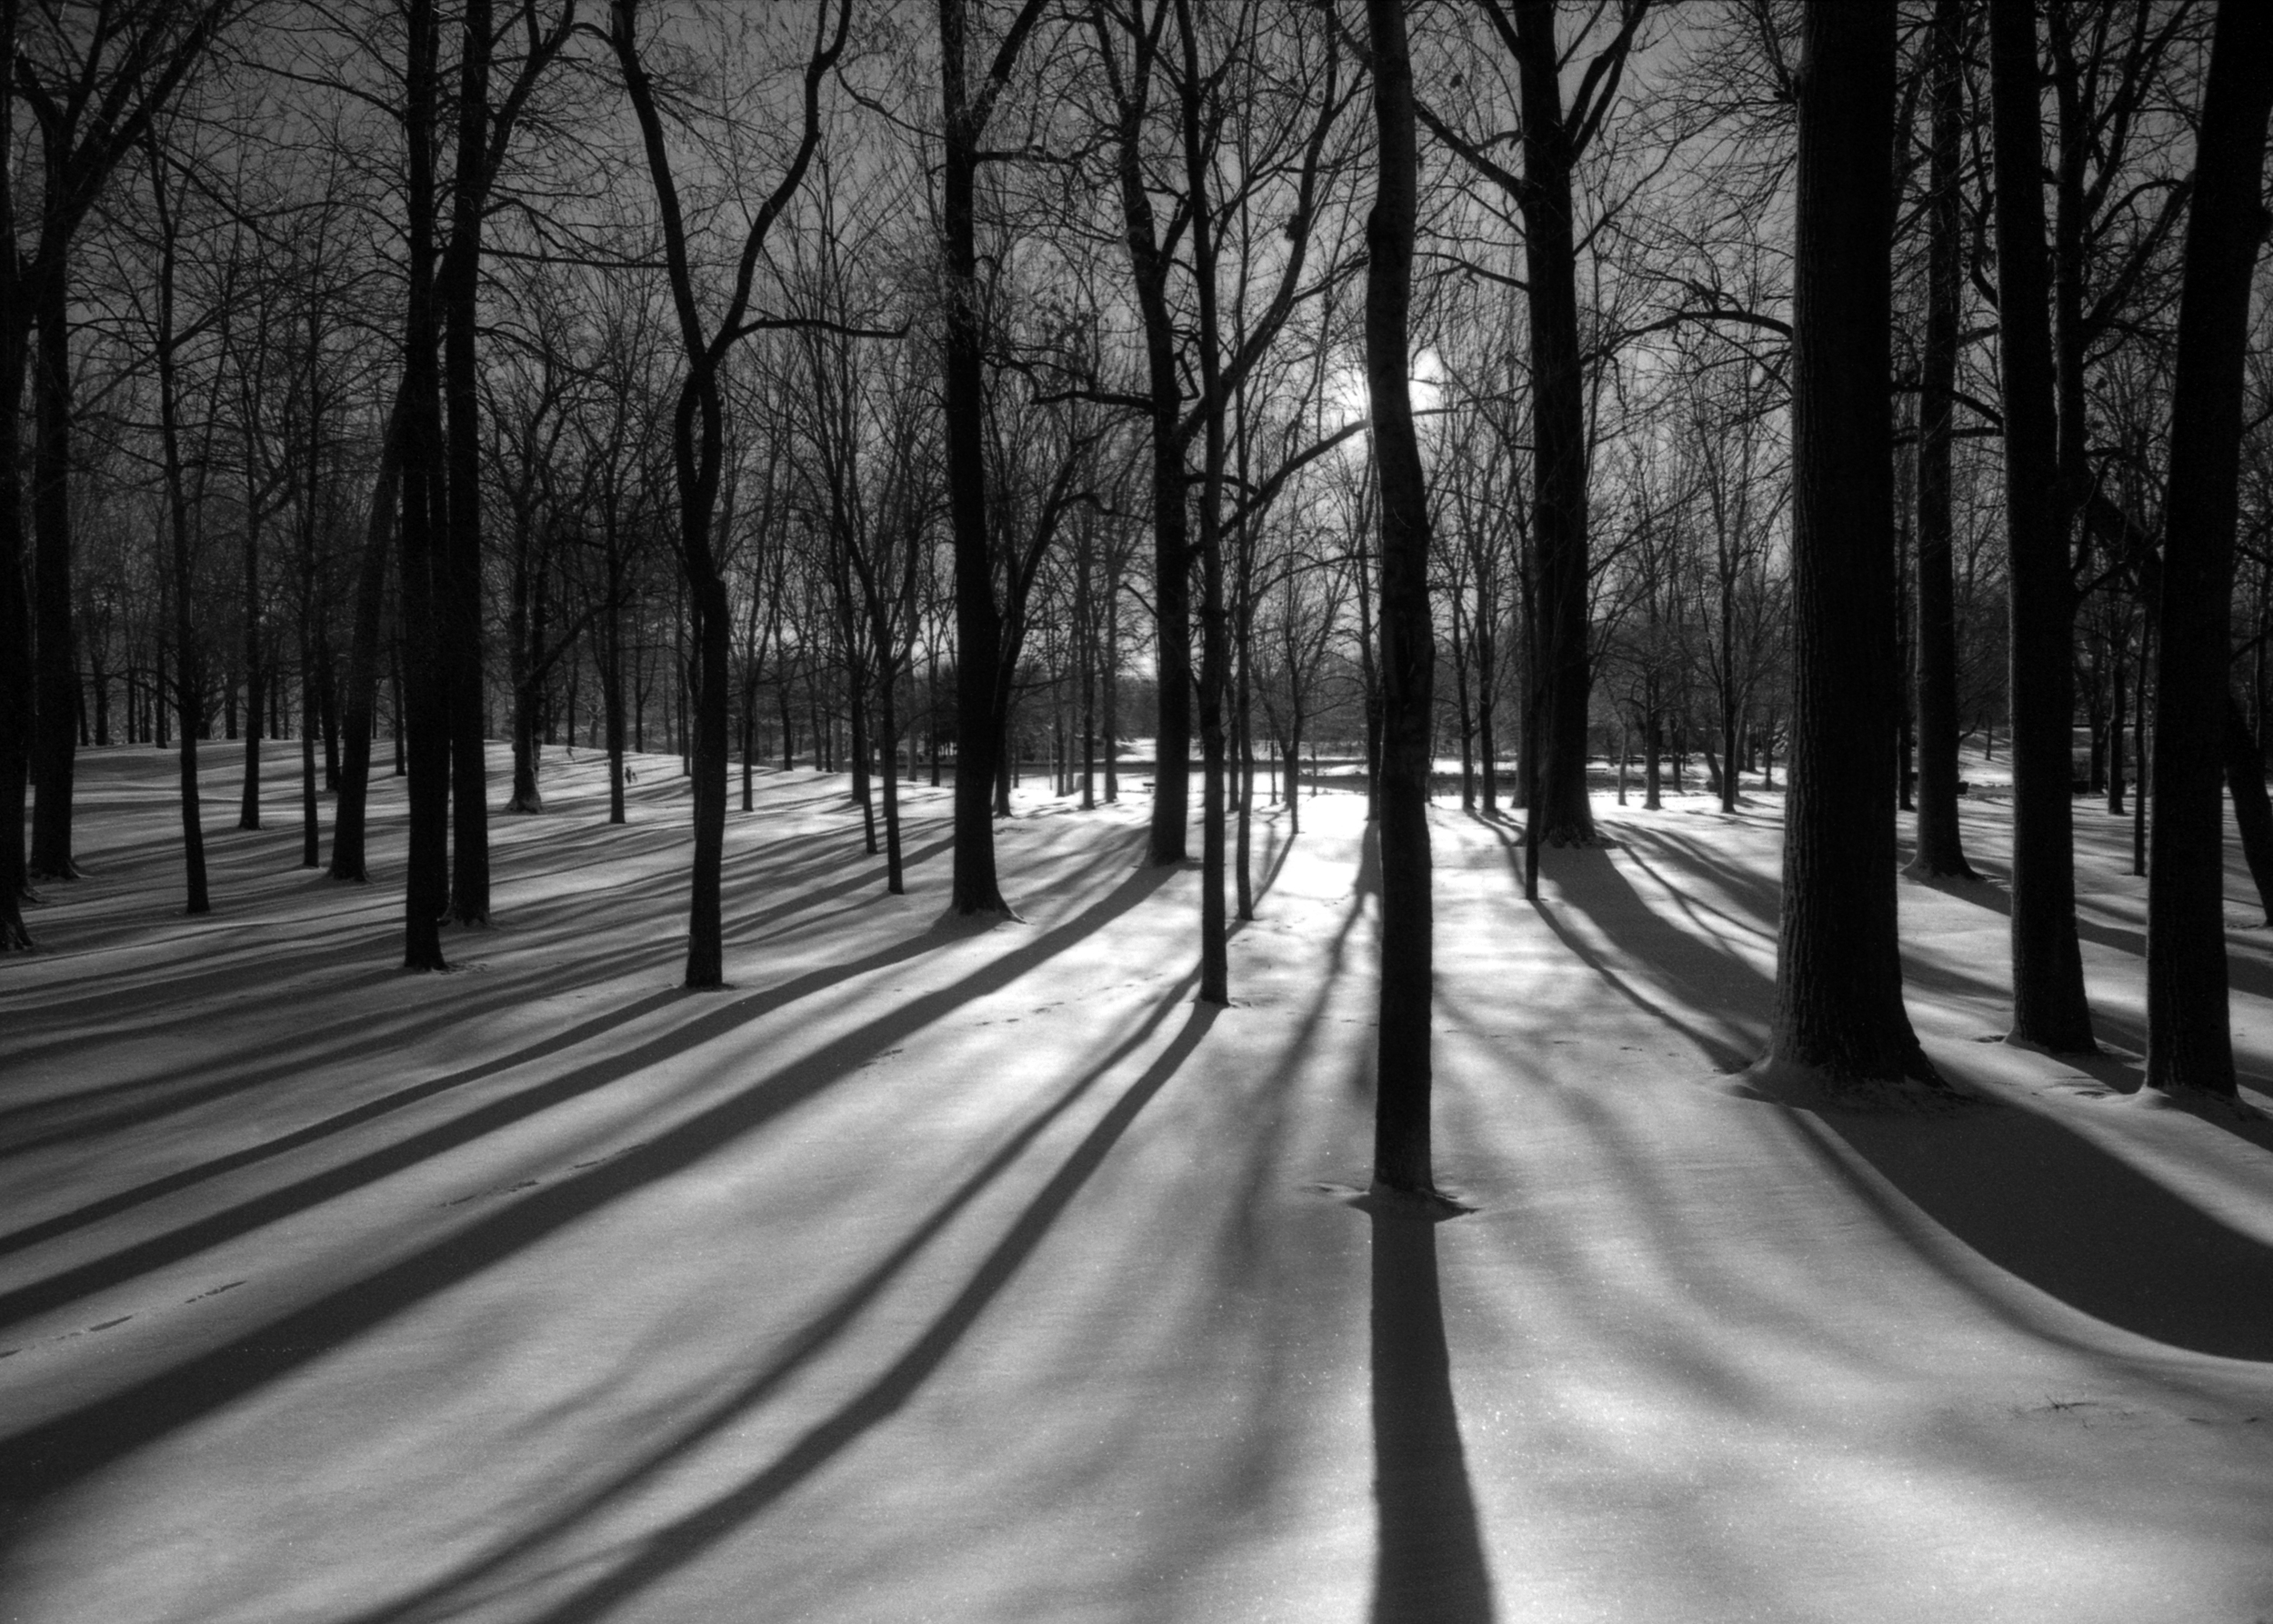   &nbsp; Winter Trees | Les arbres d'hiver  